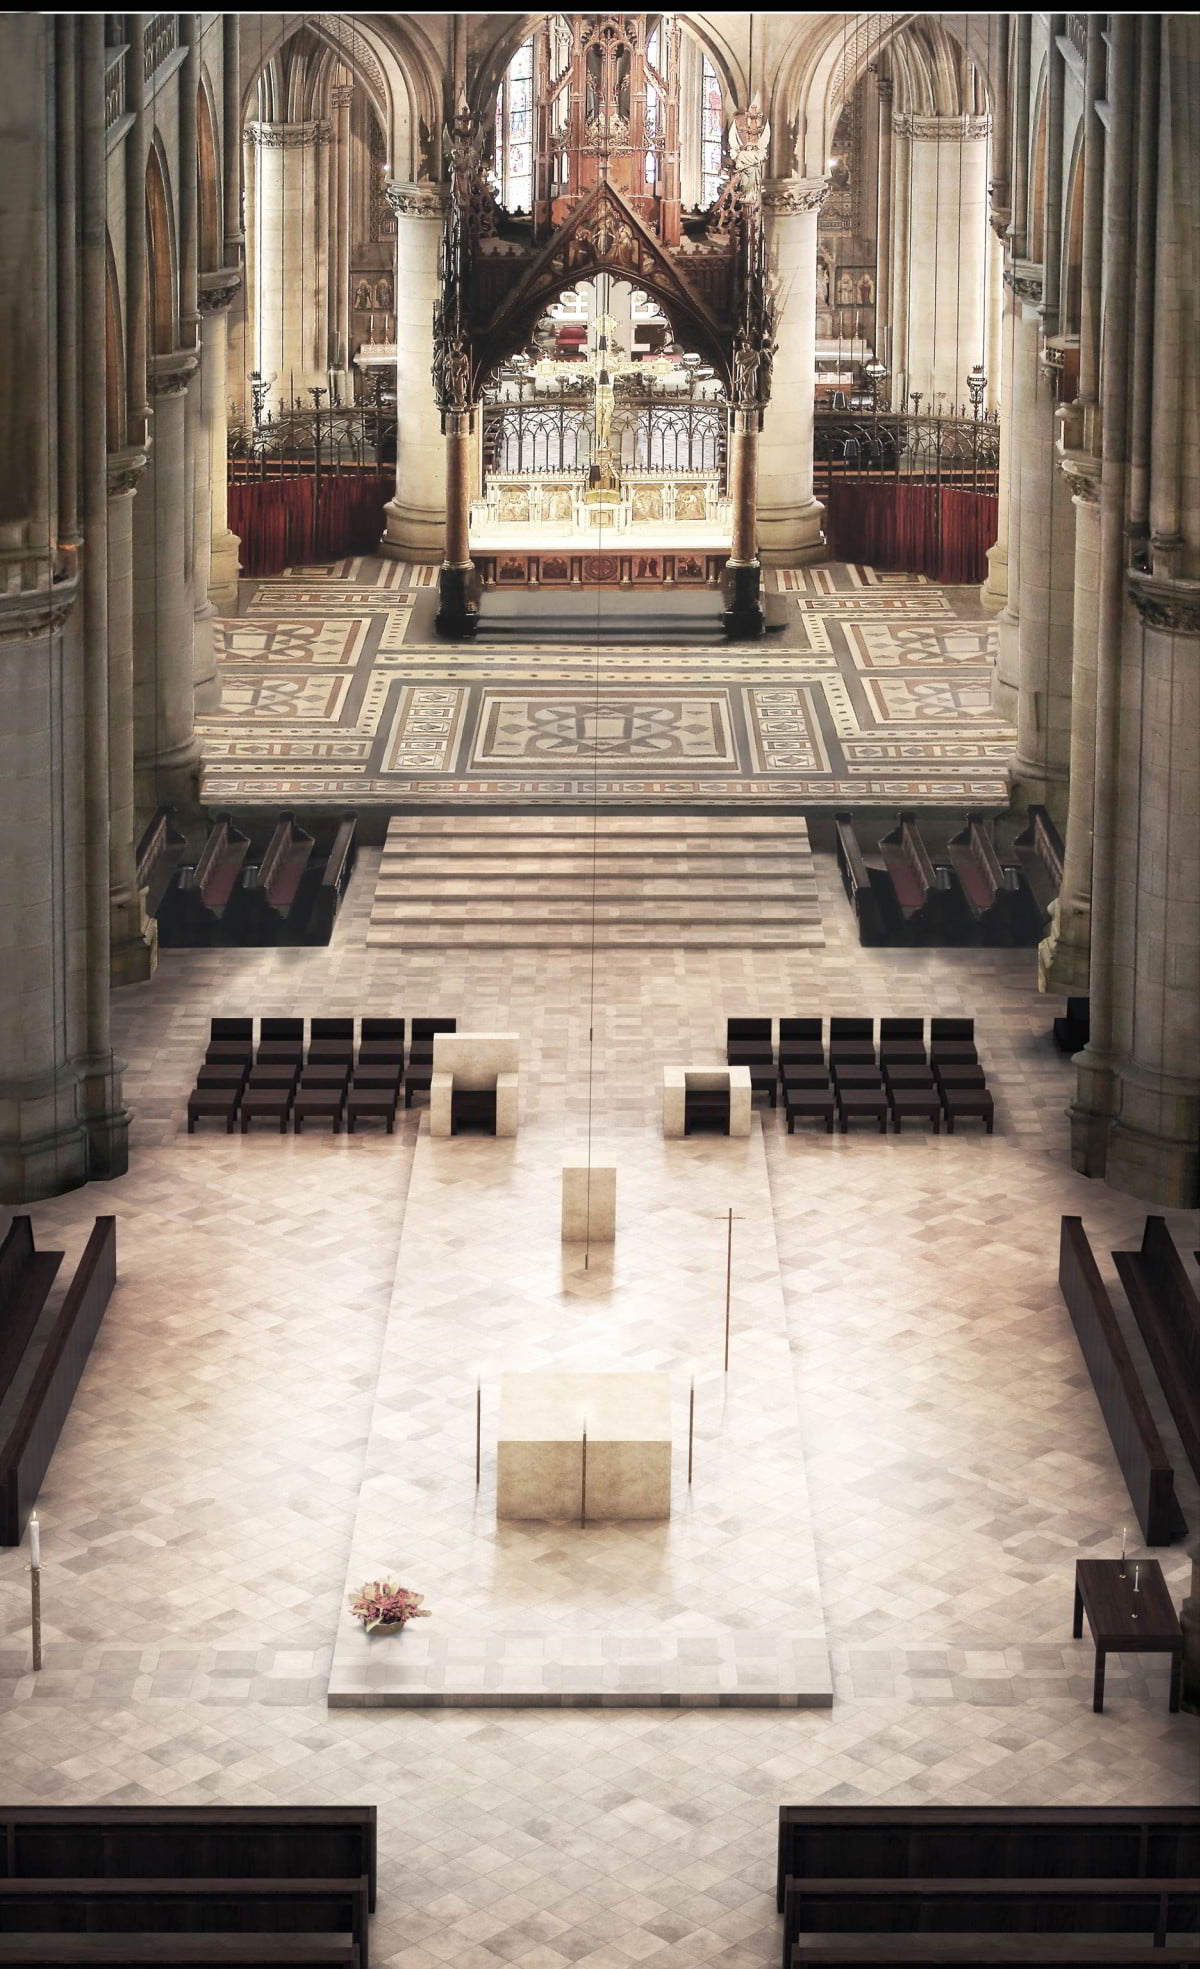 Perspektive aus Langschiff: „Bereit für die Eucharistiefeier“